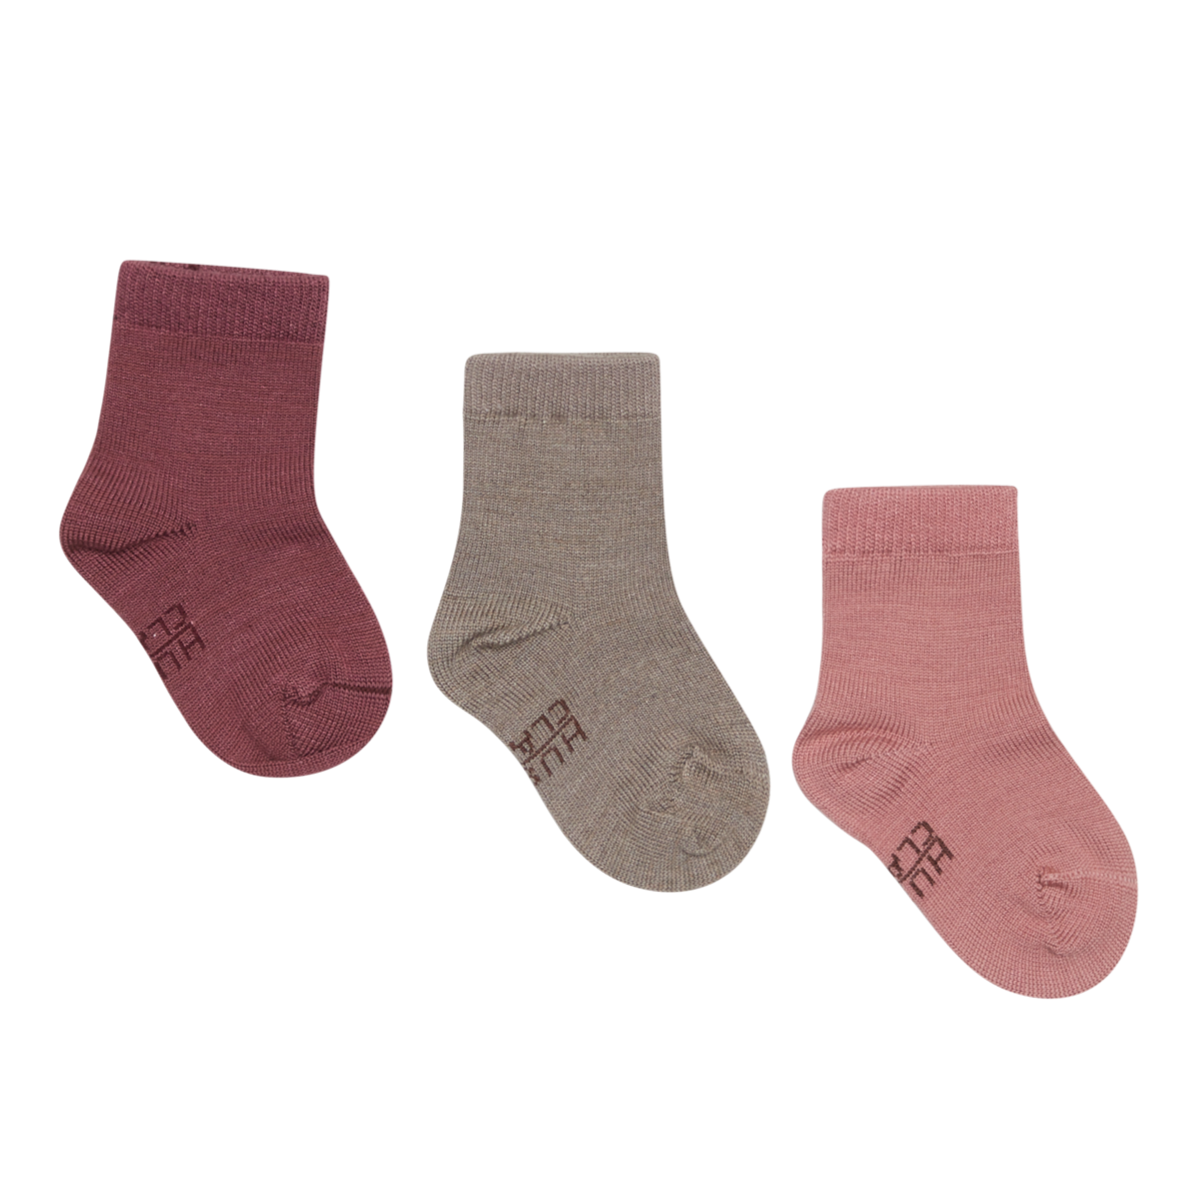 Die Socken sind unifarben und passen sehr gut zur Kollektion. Sie haben ein angenehm breites Bündchen und sind aufgrund der Materialmischung sehr weich.